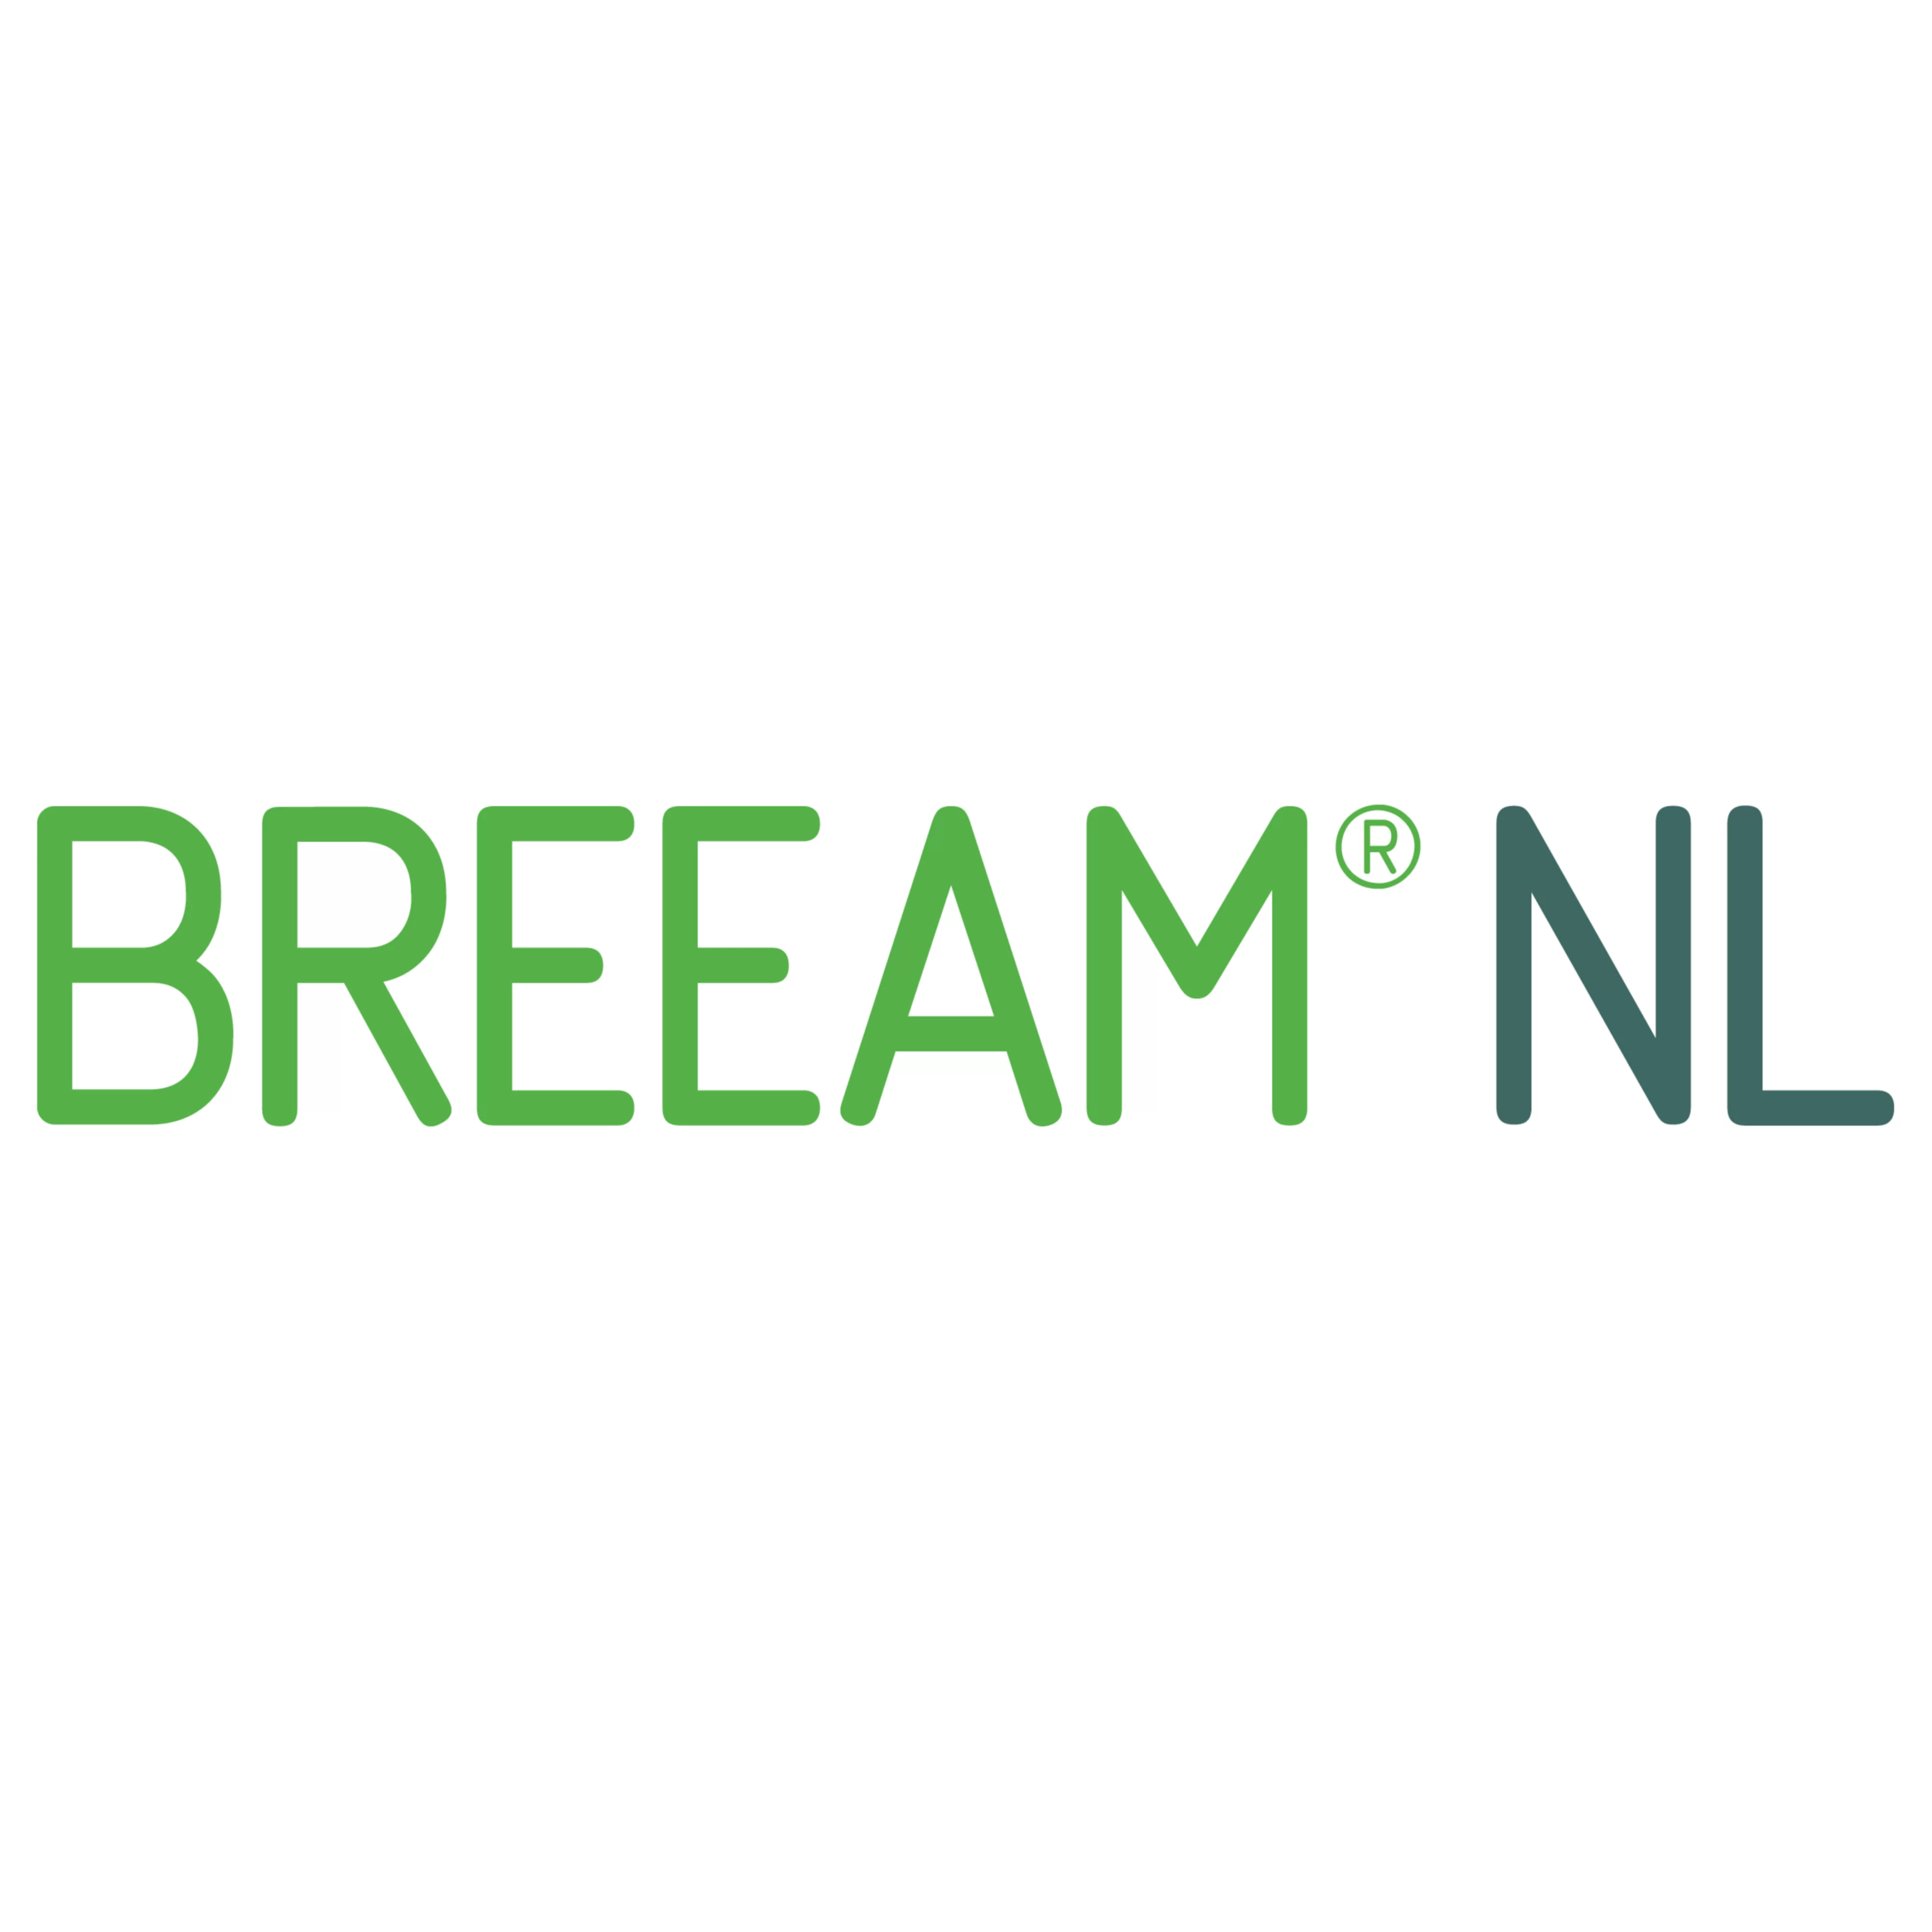 BREEAM_NL_logo_green_rgb